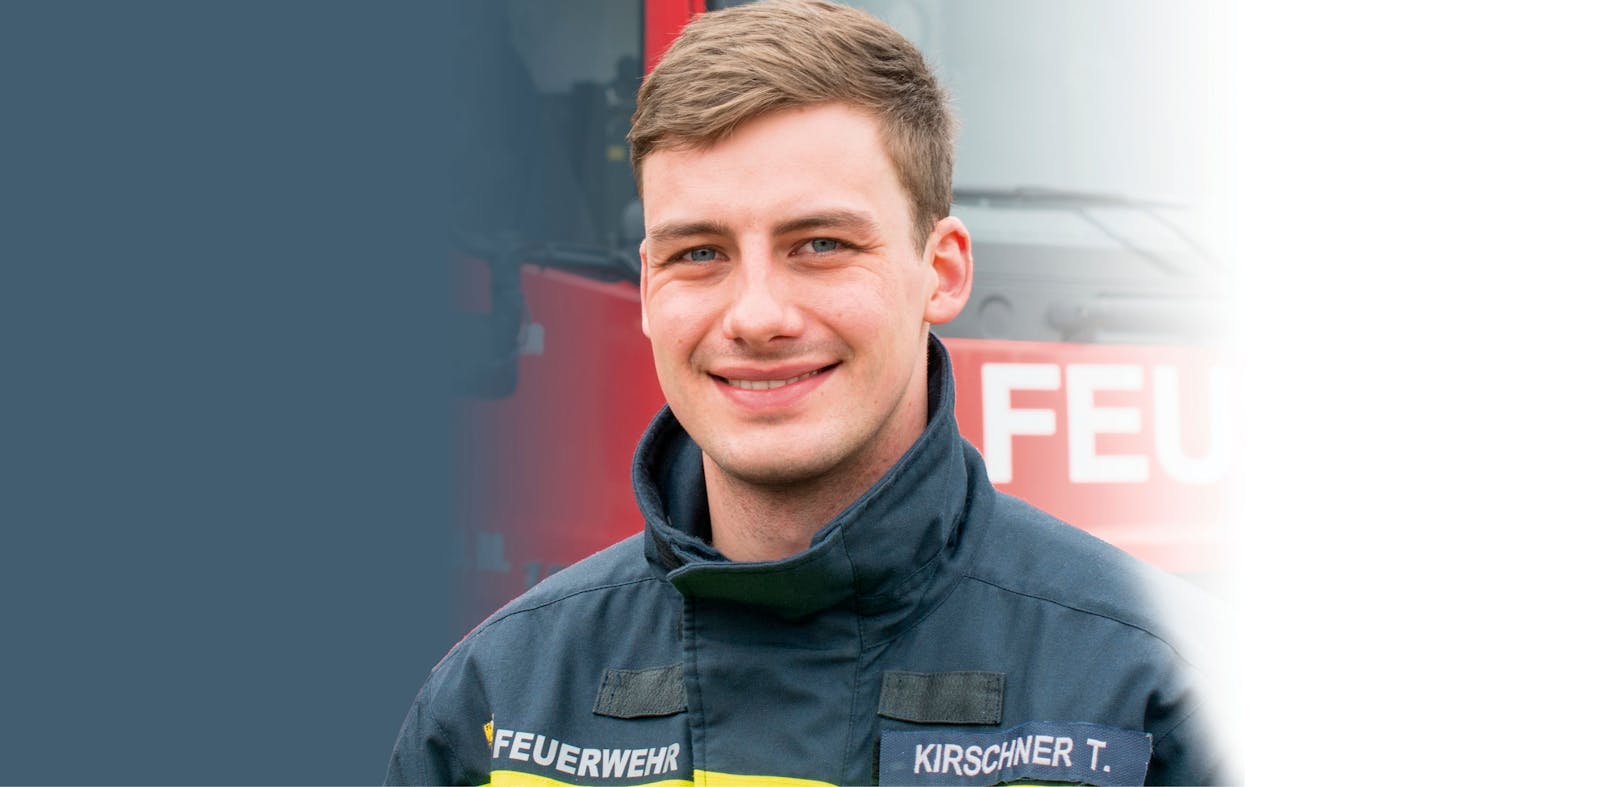 Feuerwehr-Kommandant Thomas Kirschner: "Mussten das Pferd zunächst sedieren."